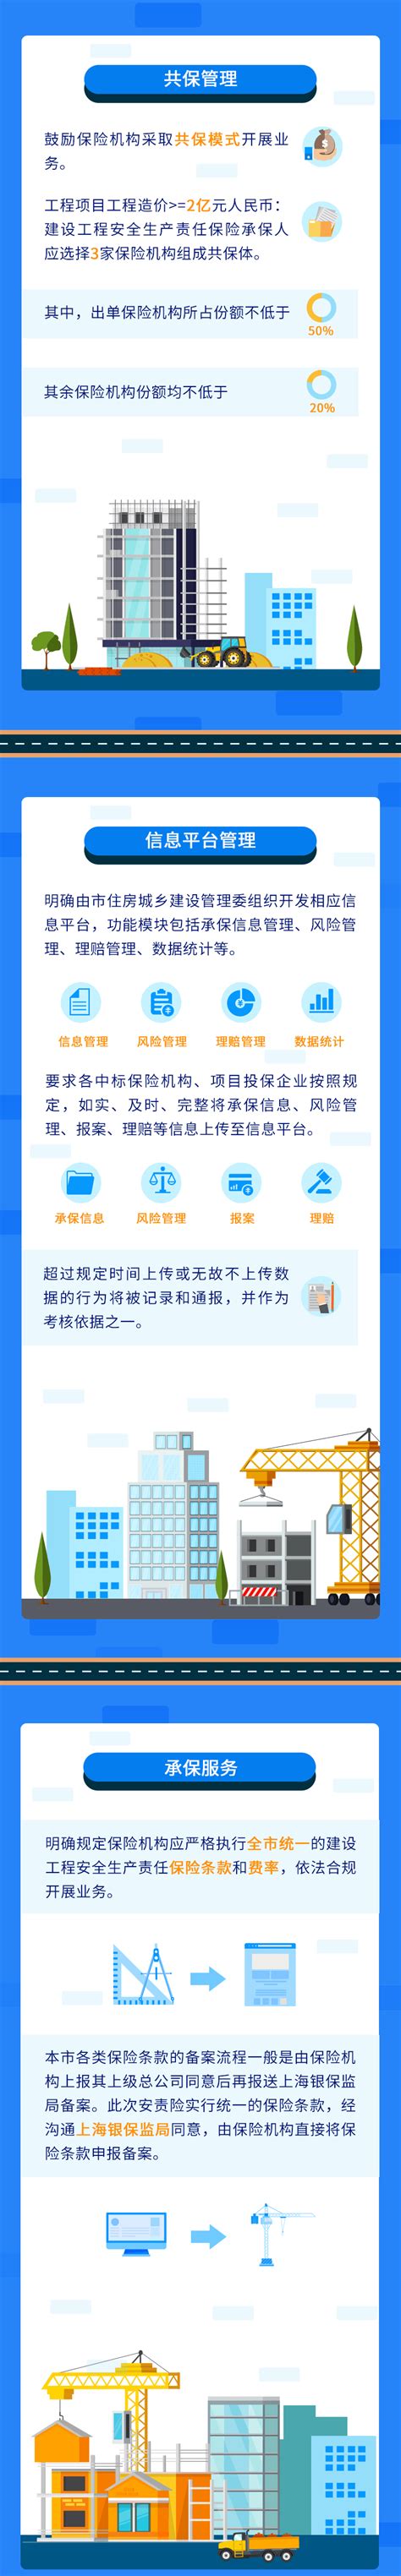 上海市建设工程信息网站